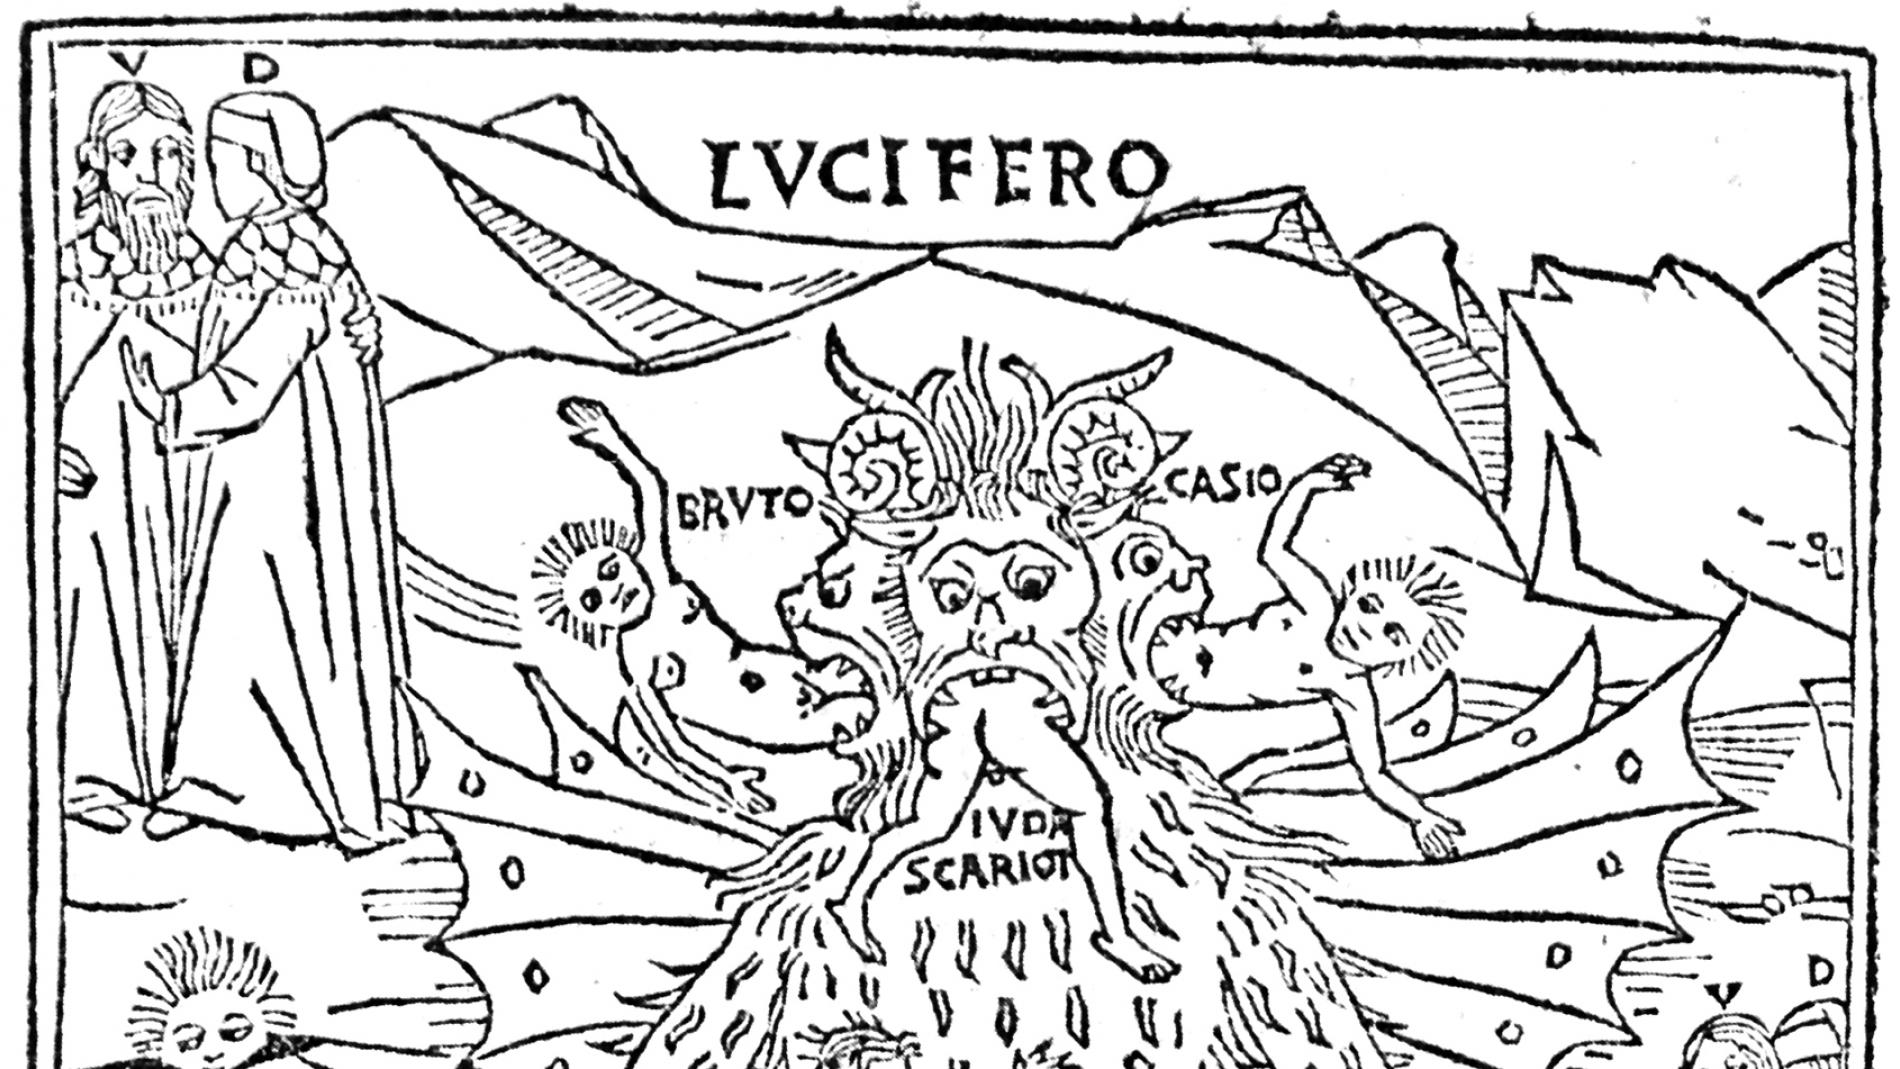 Dante Alighieri y la Divina Comedia (I): Inferno – El Estudio del